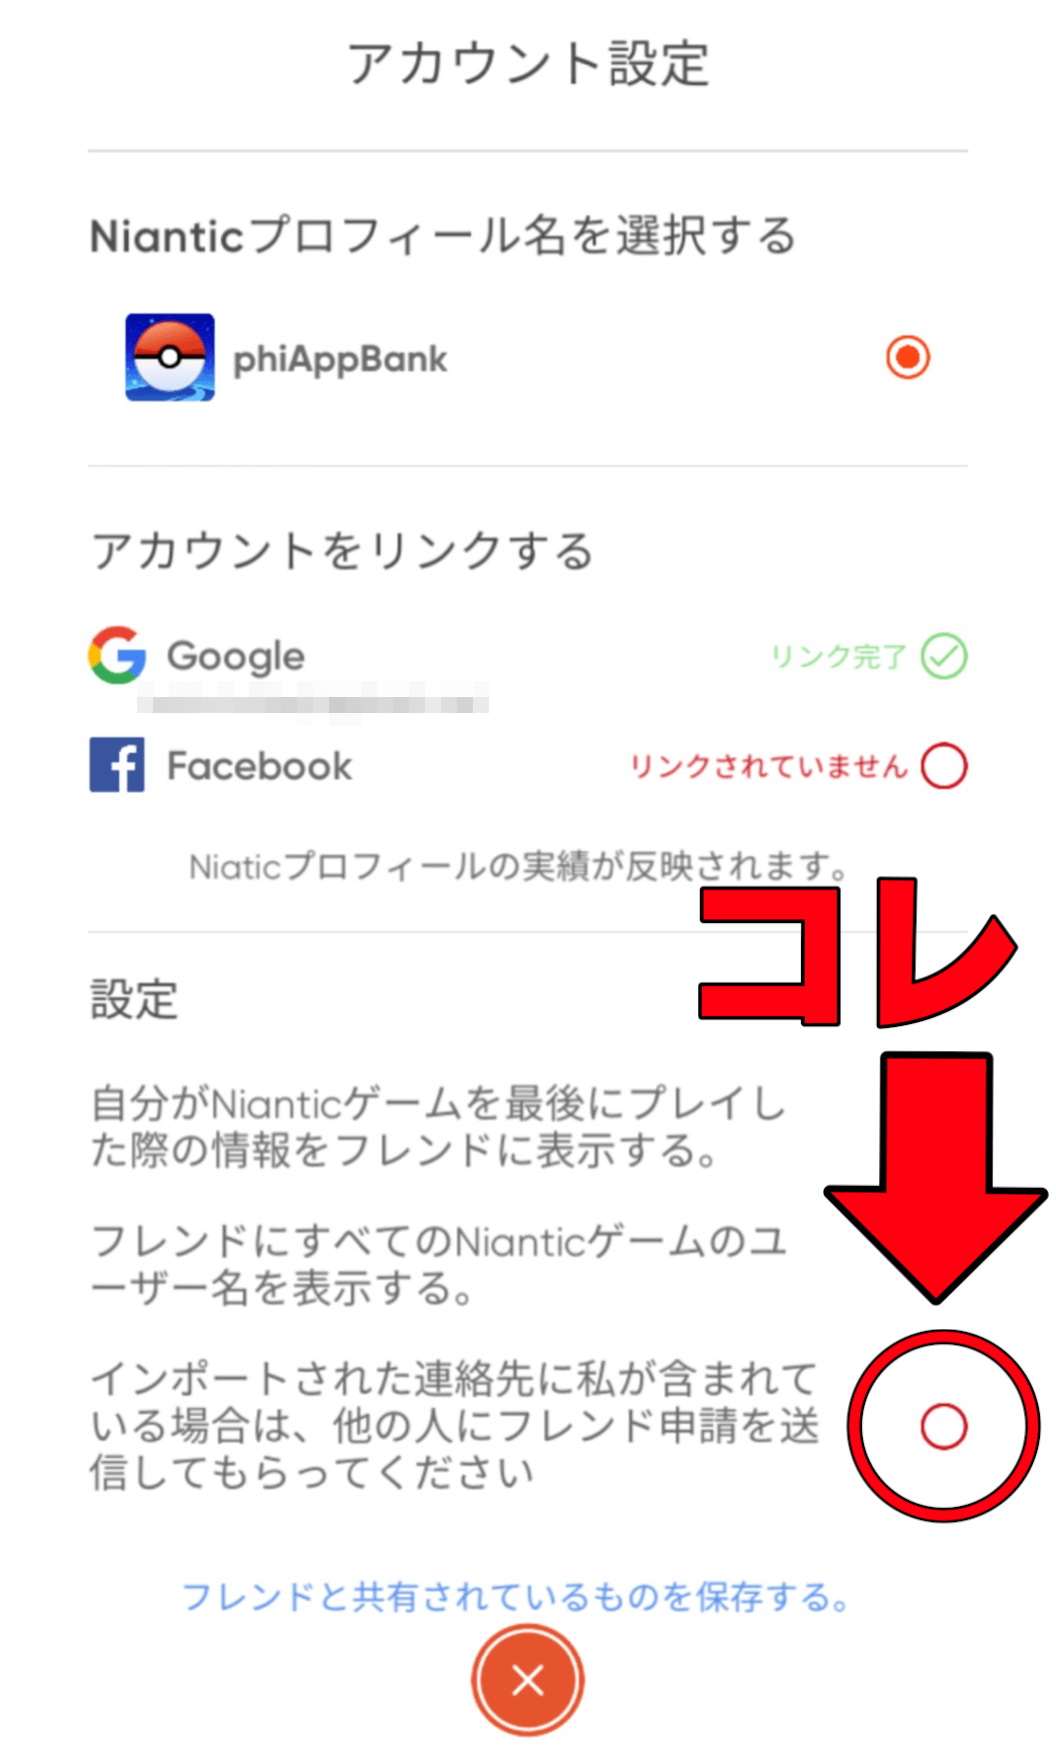 ポケモンgo アドレス帳からフレンド検索されない方法の設定紹介 新機能の手順はやや複雑 Appbank